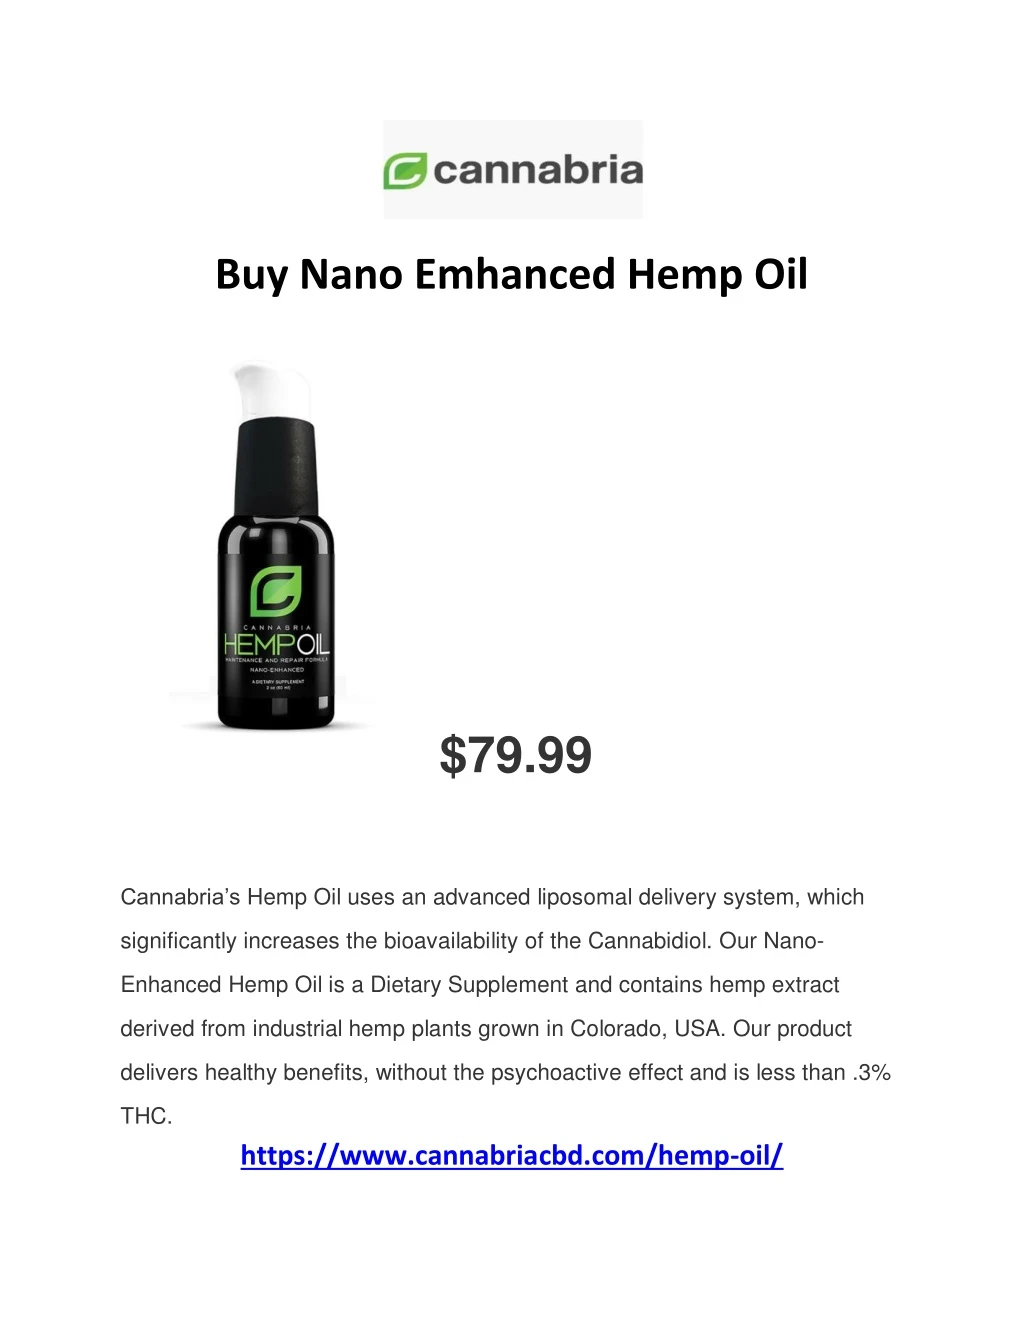 buy nano emhanced hemp oil